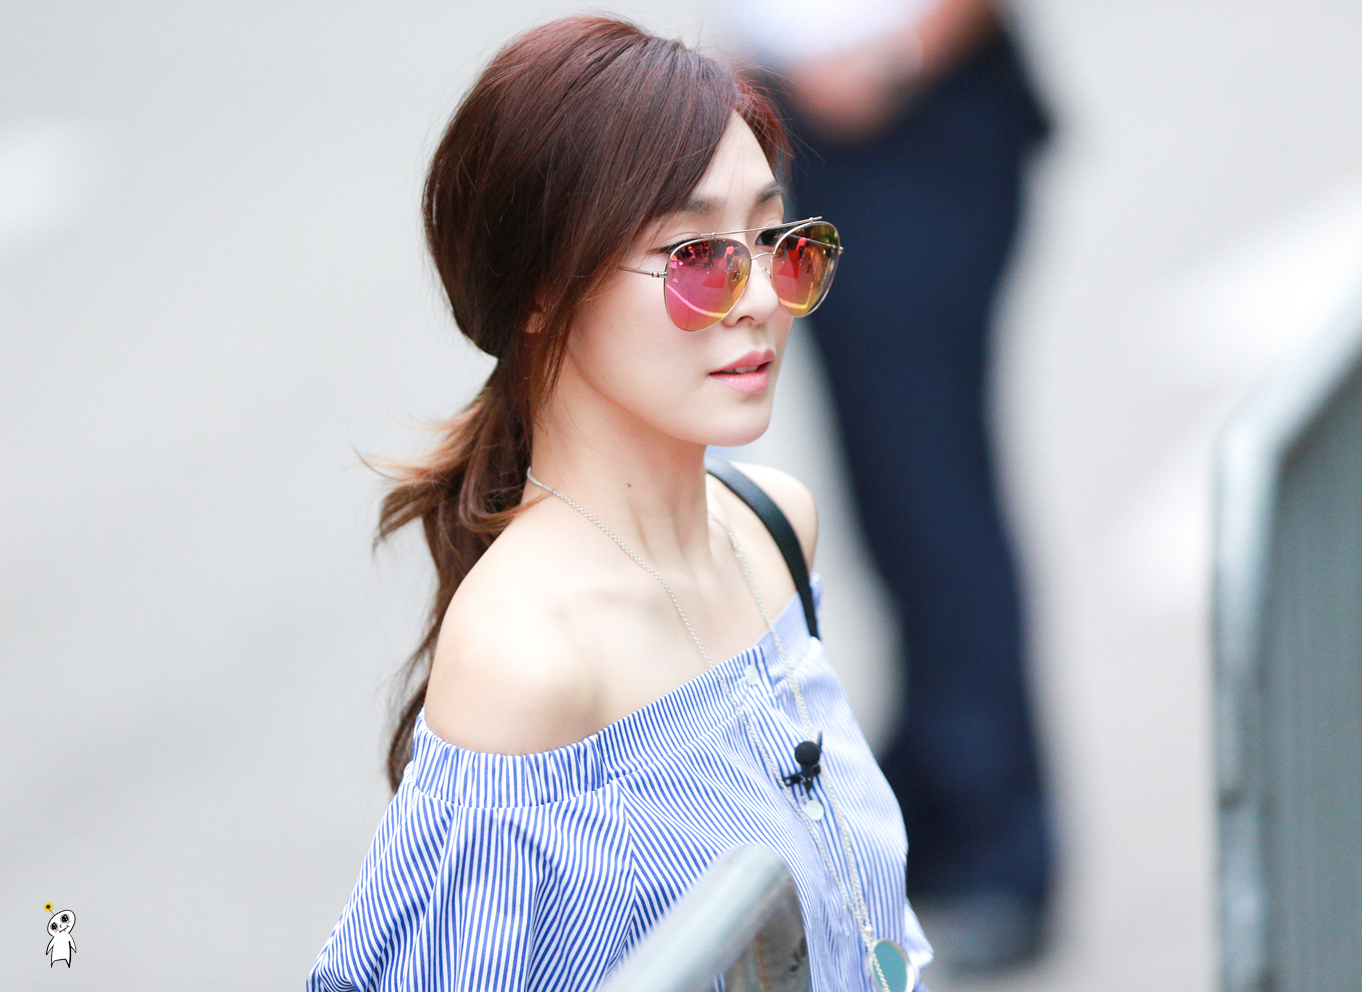 [PIC][01-07-2016]Tiffany xuất hiện tại tòa nhà KBS để quảng bá cho "SHUT UP" 216F3B3A577785252B596E